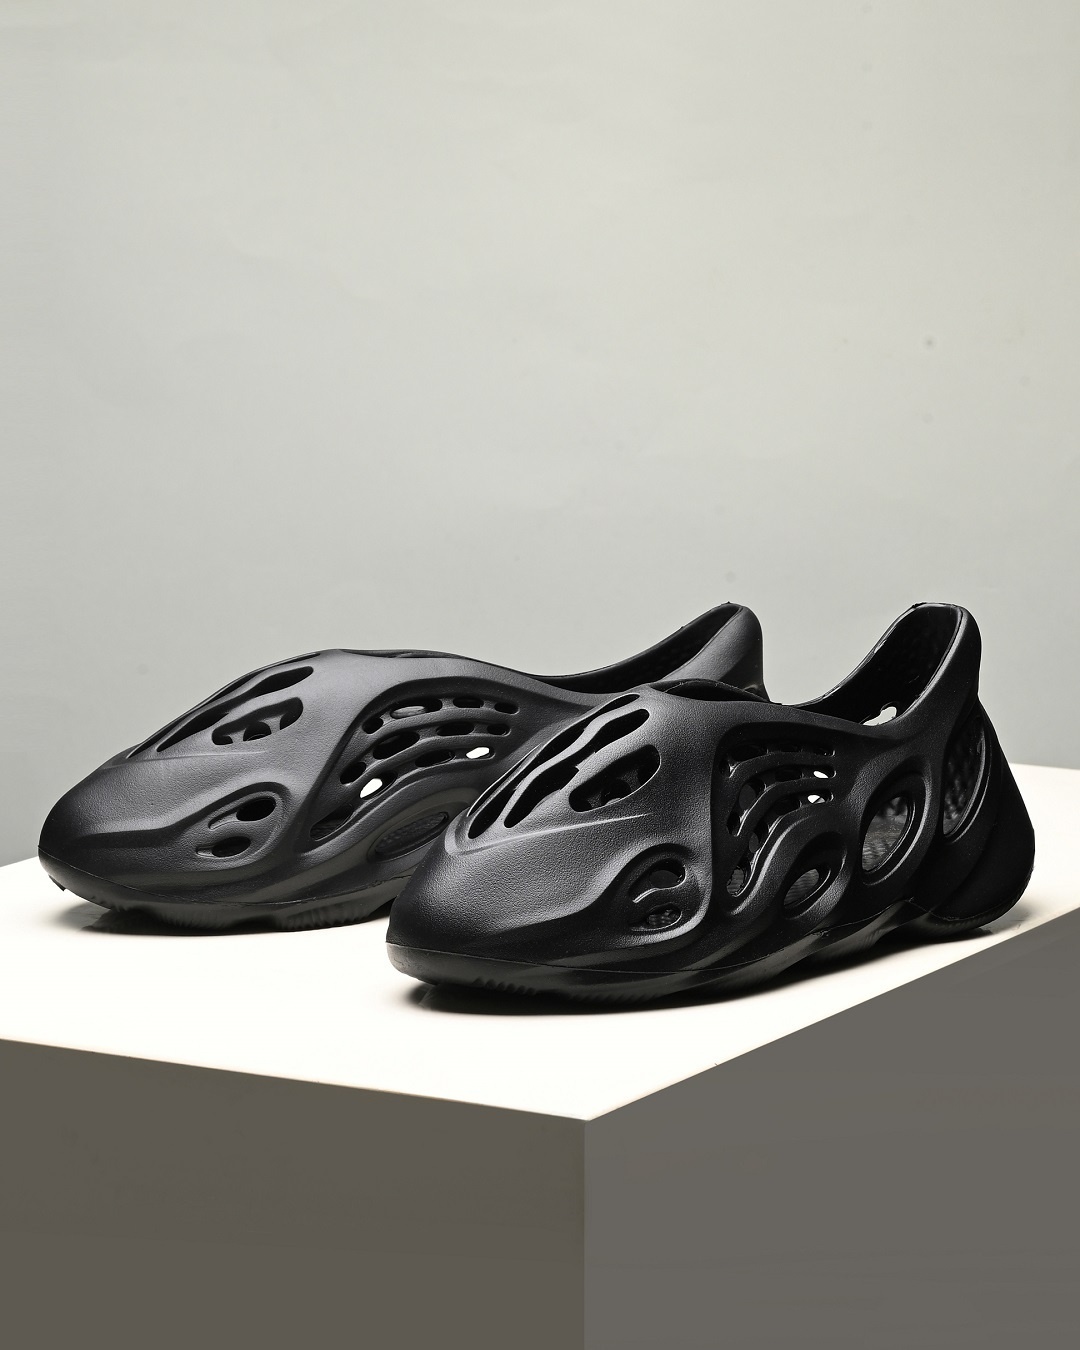 Buy Men's Black Sandals Online in India at Bewakoof